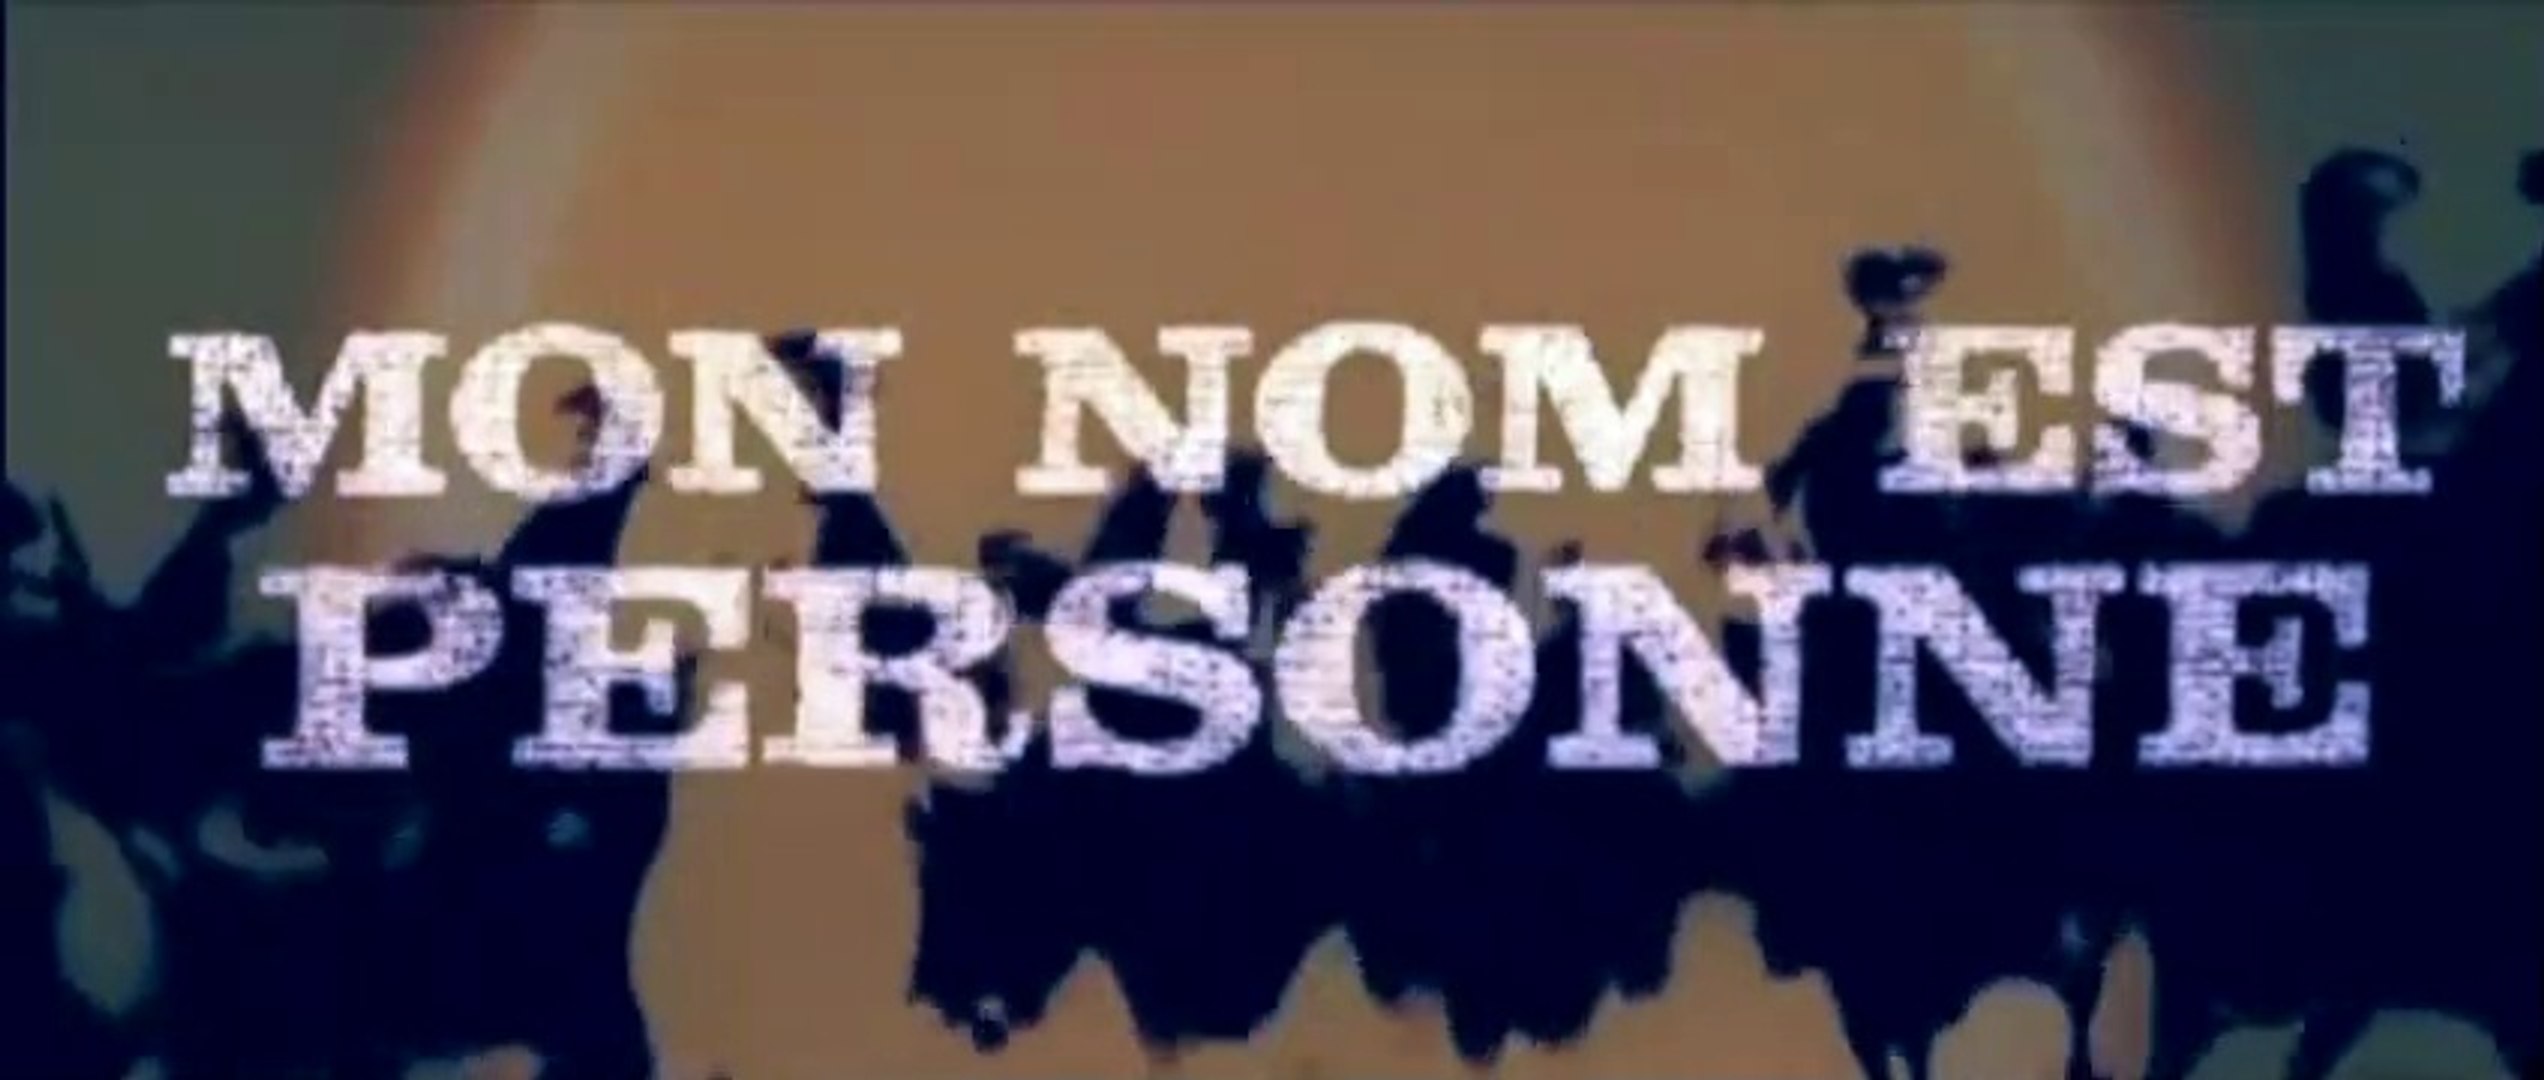 Mon nom est Personne (1973) Bande annonce française 